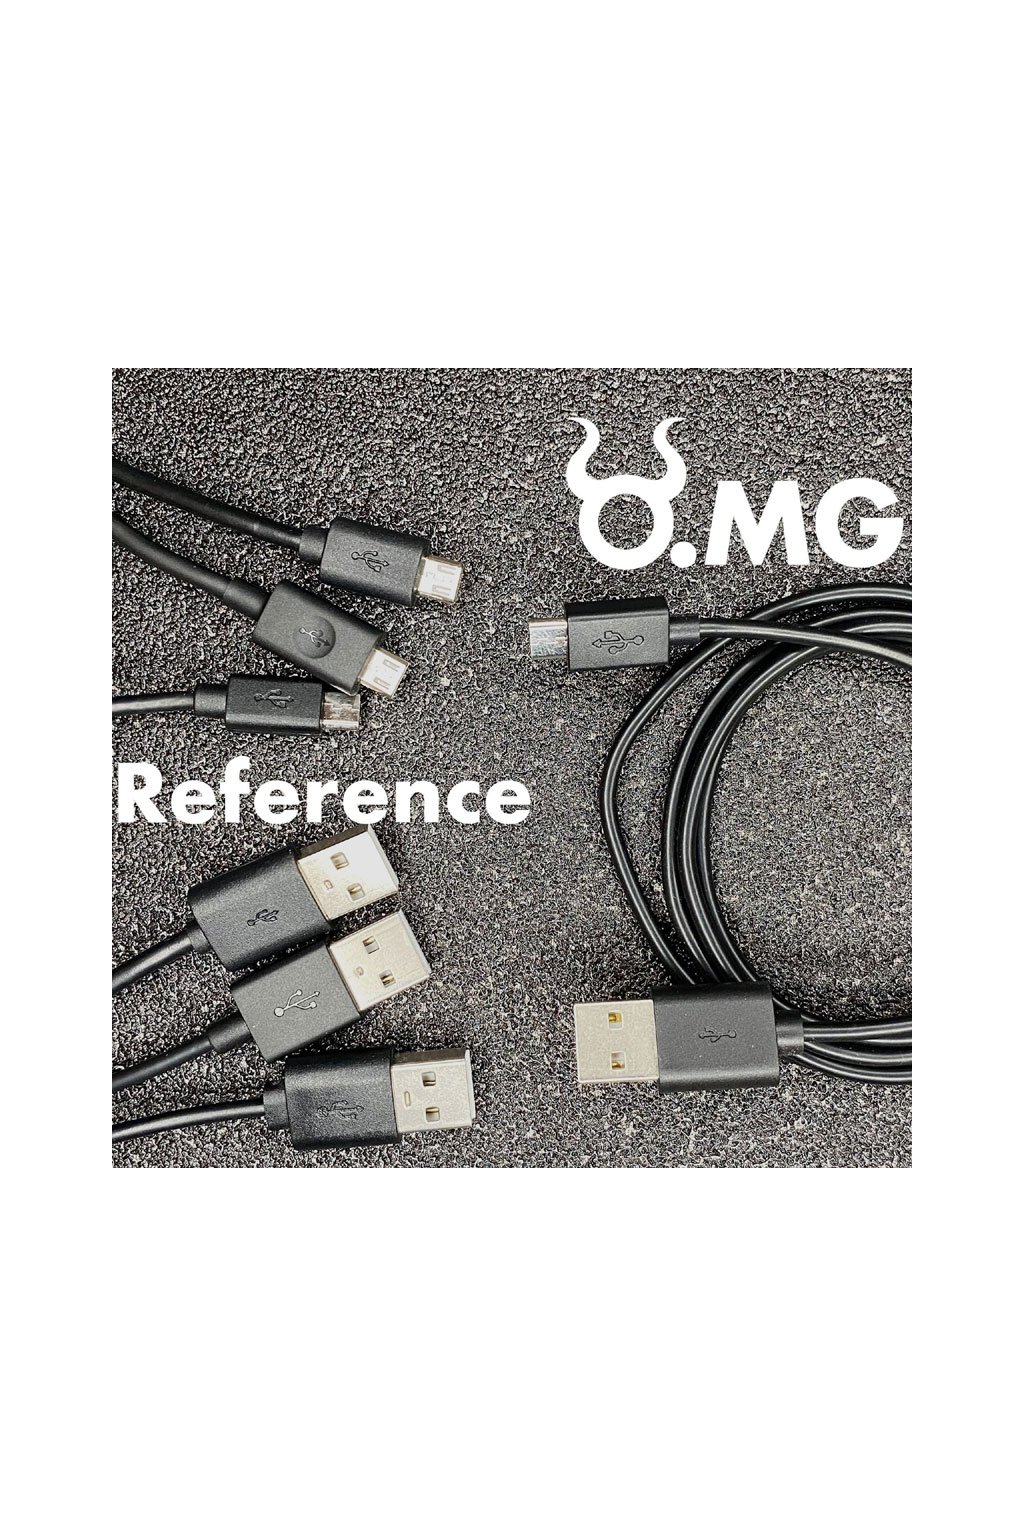 O.MG Cable - Hak5